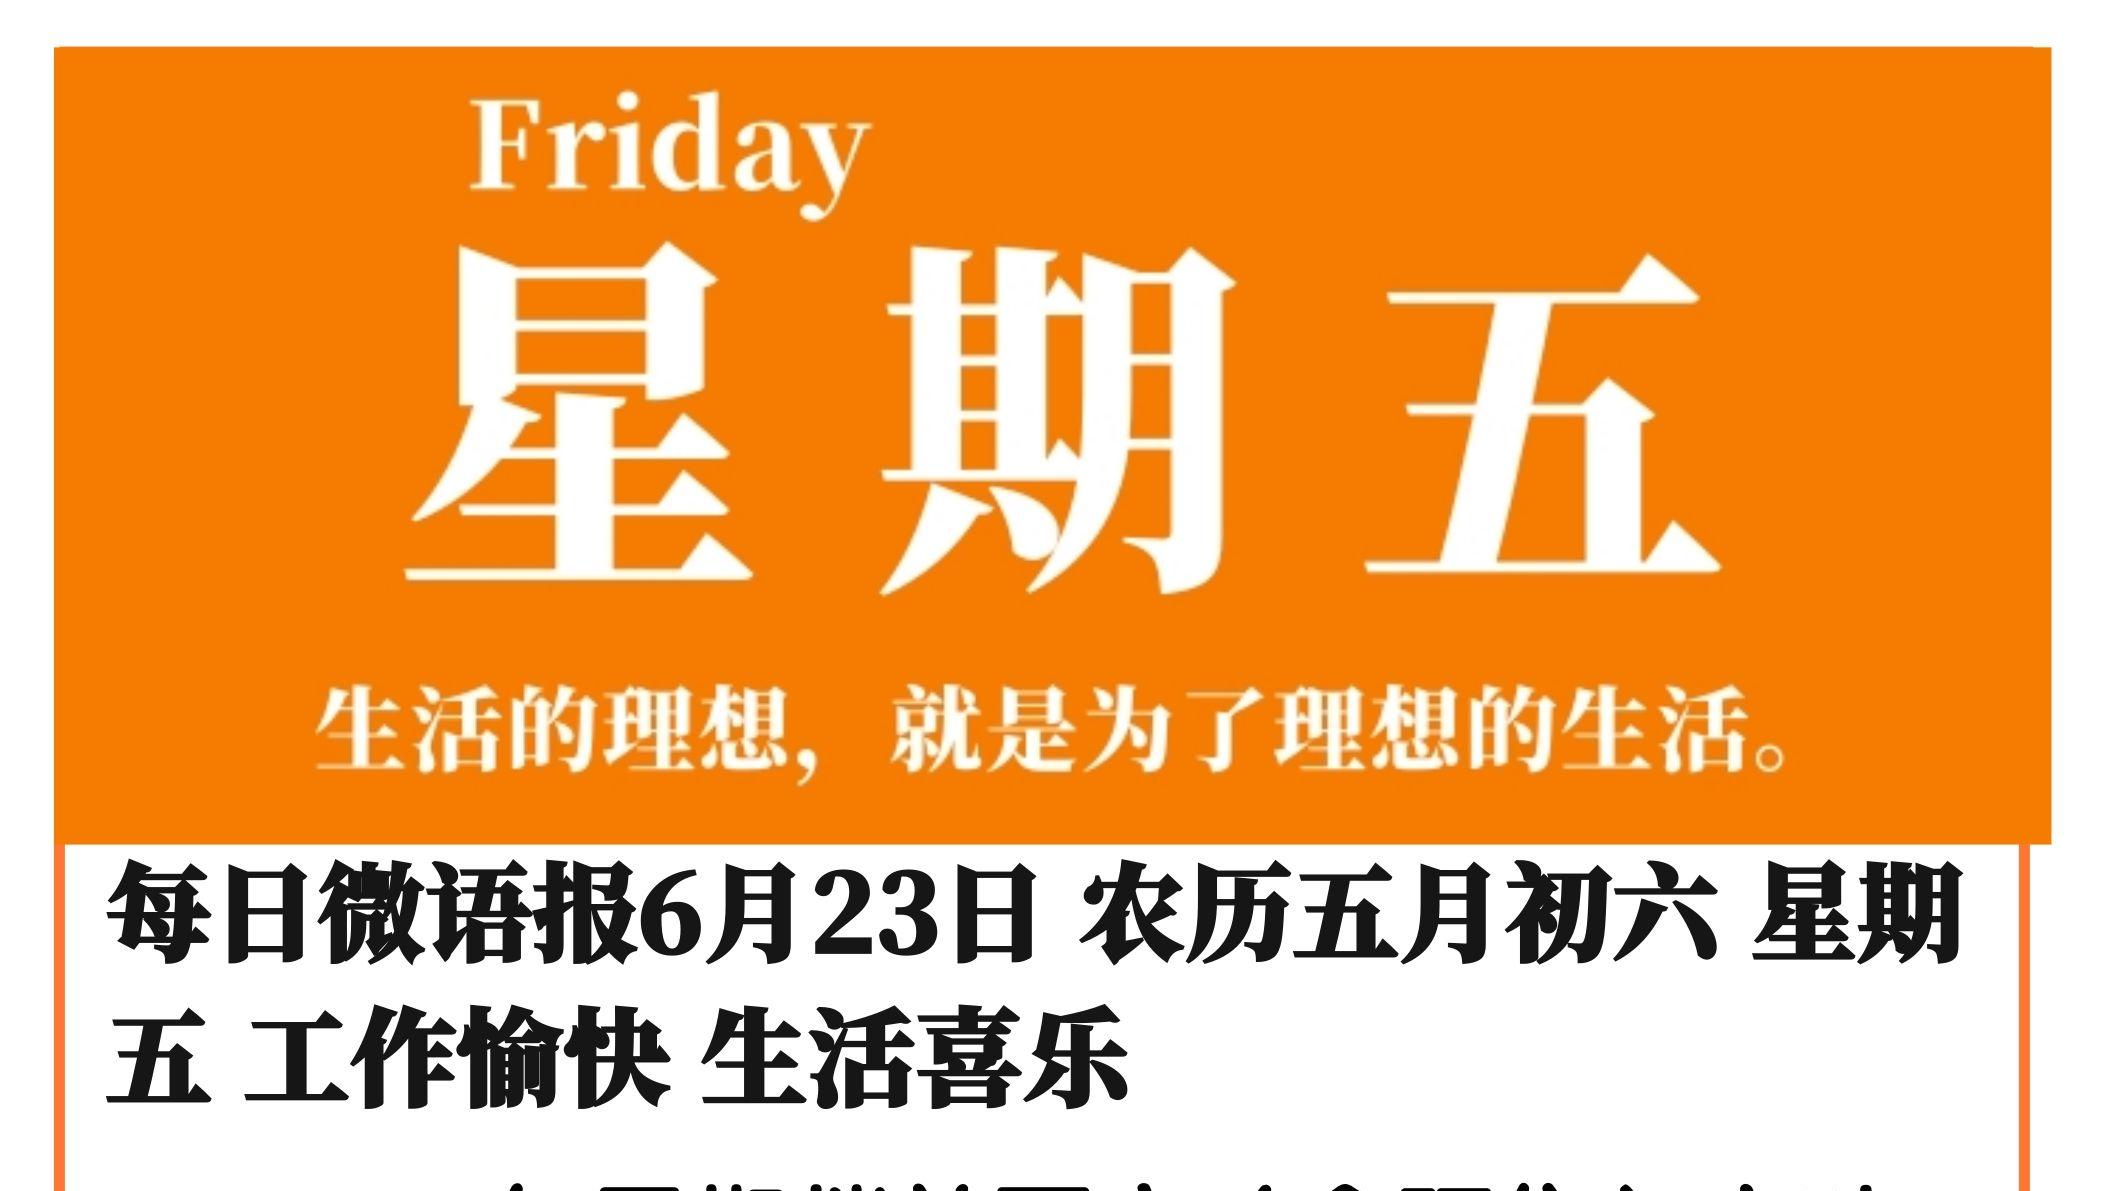 每日微语报6月23日 农历五月初六 星期五 工作愉快 生活喜乐